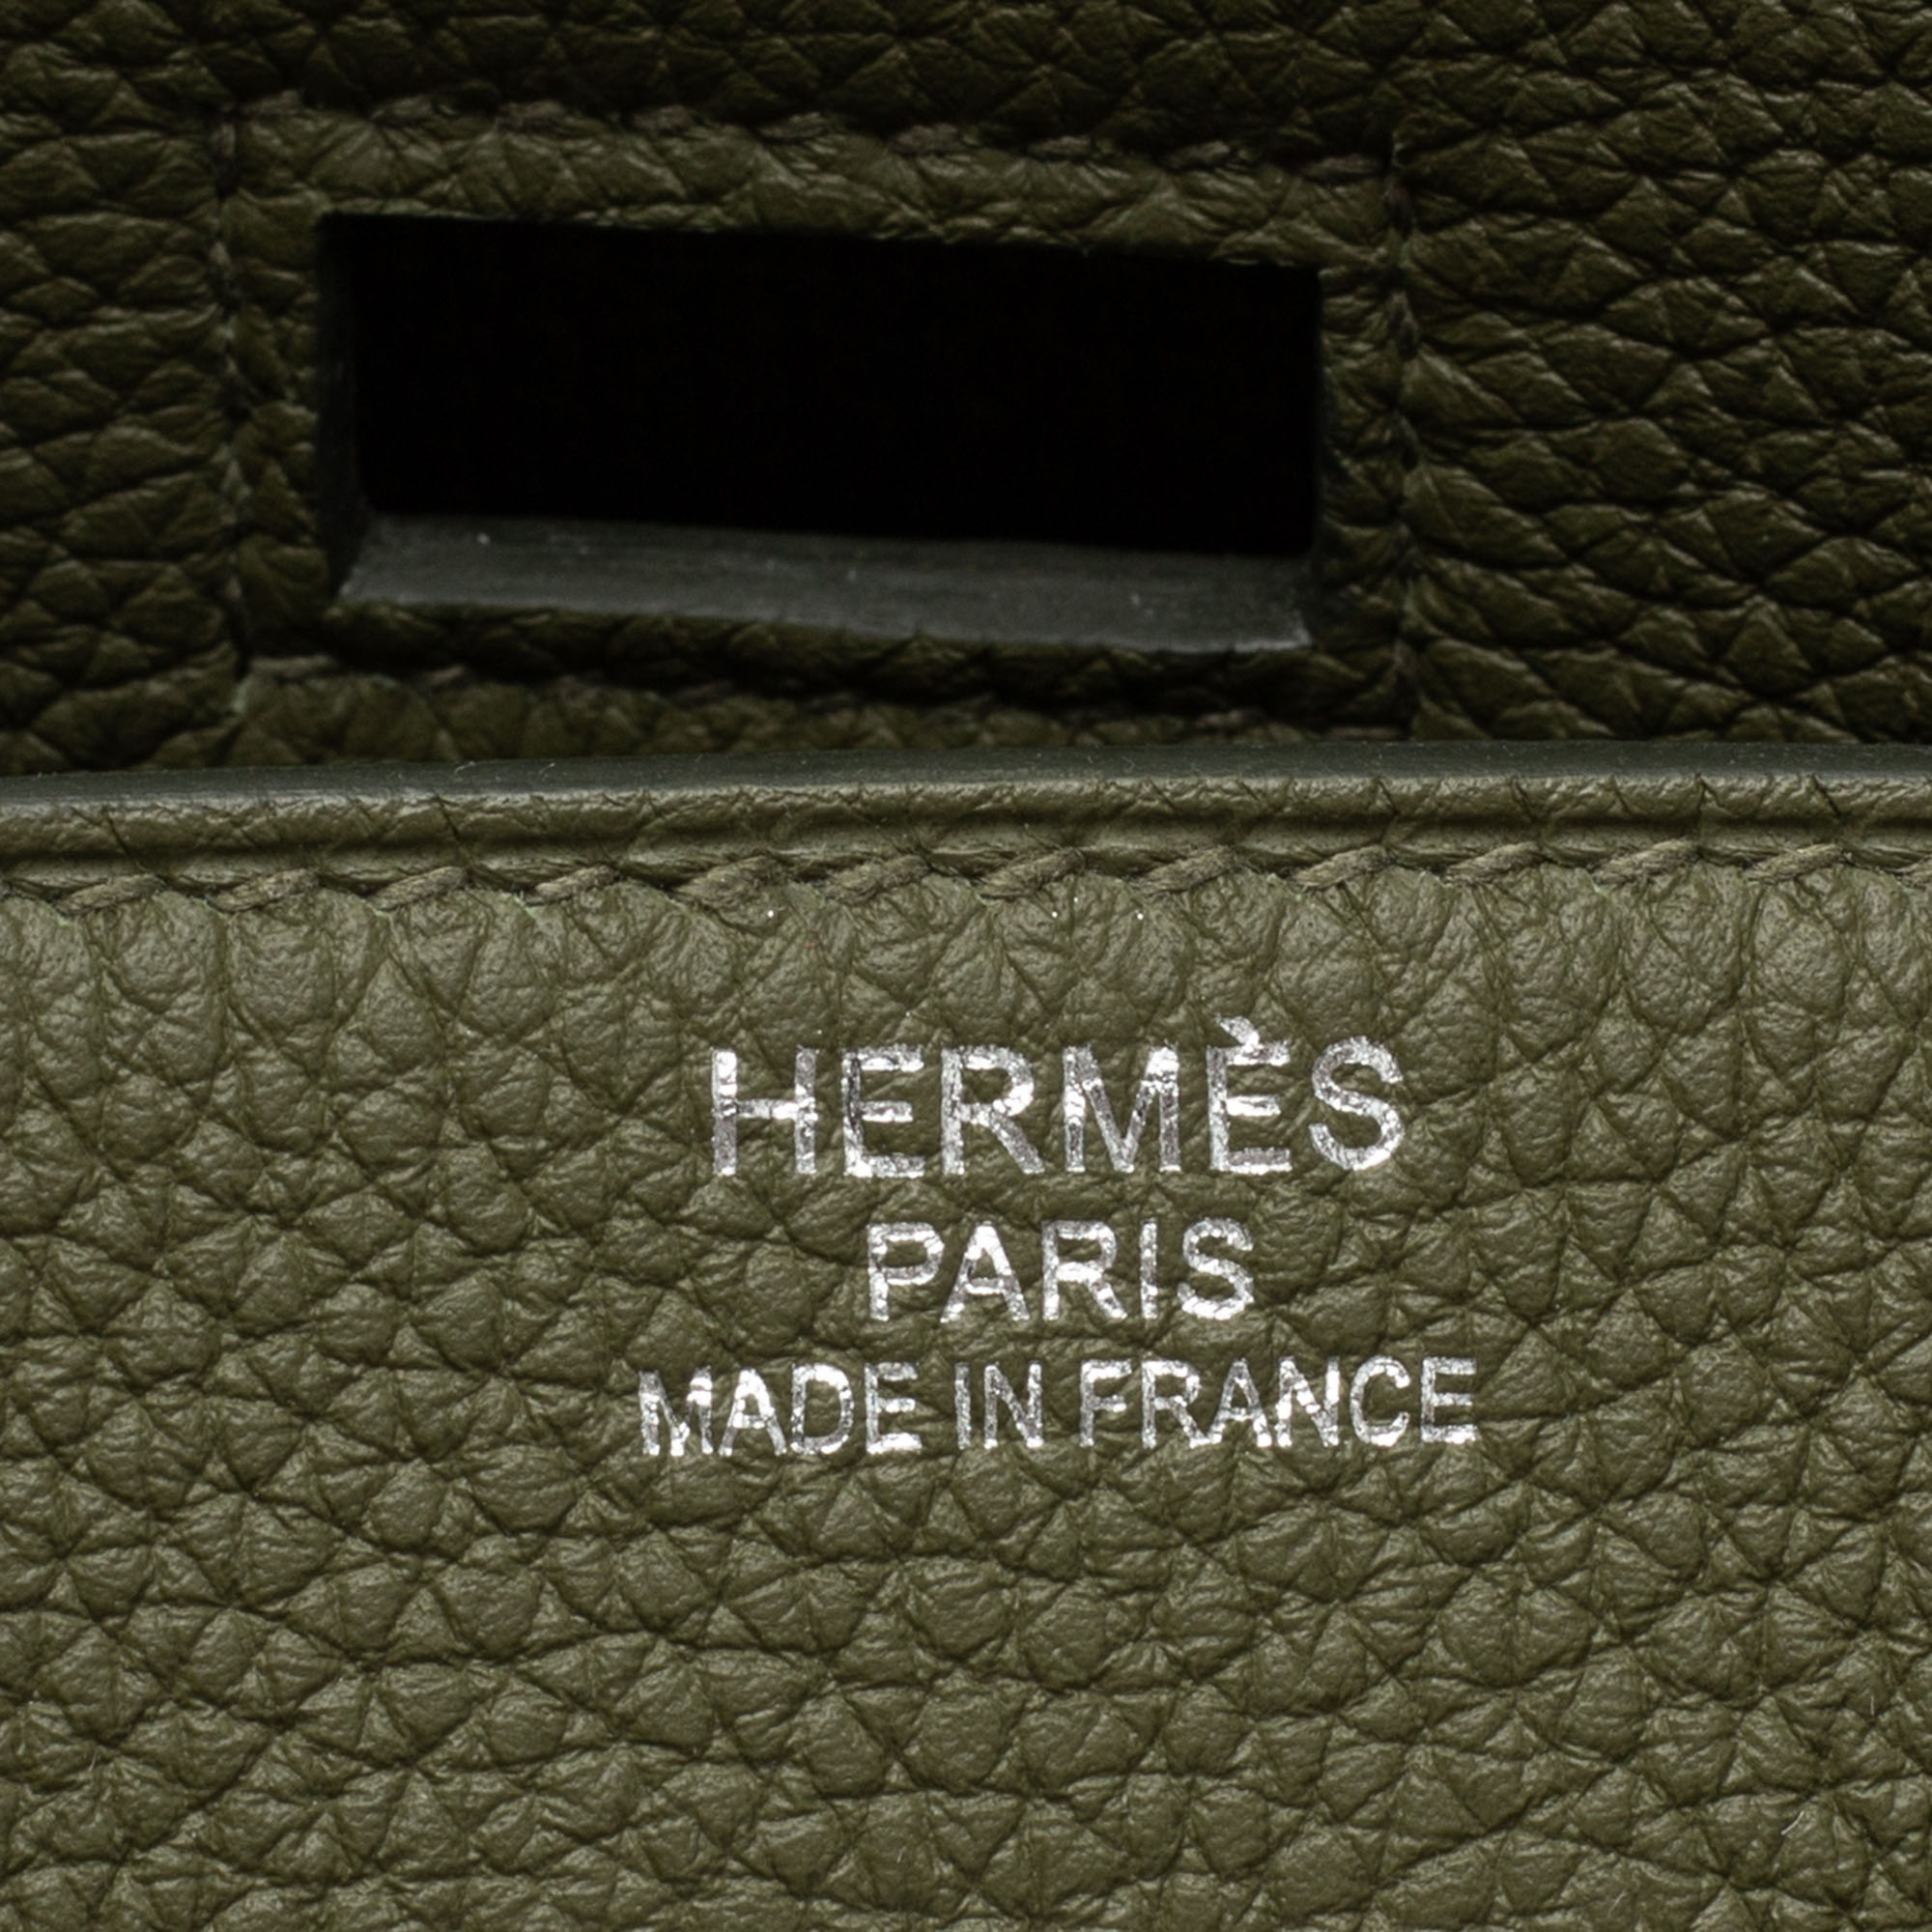 Hermes Hac 40 Vert Veronese / Ecru Vert Amande Toile Birkin Bag